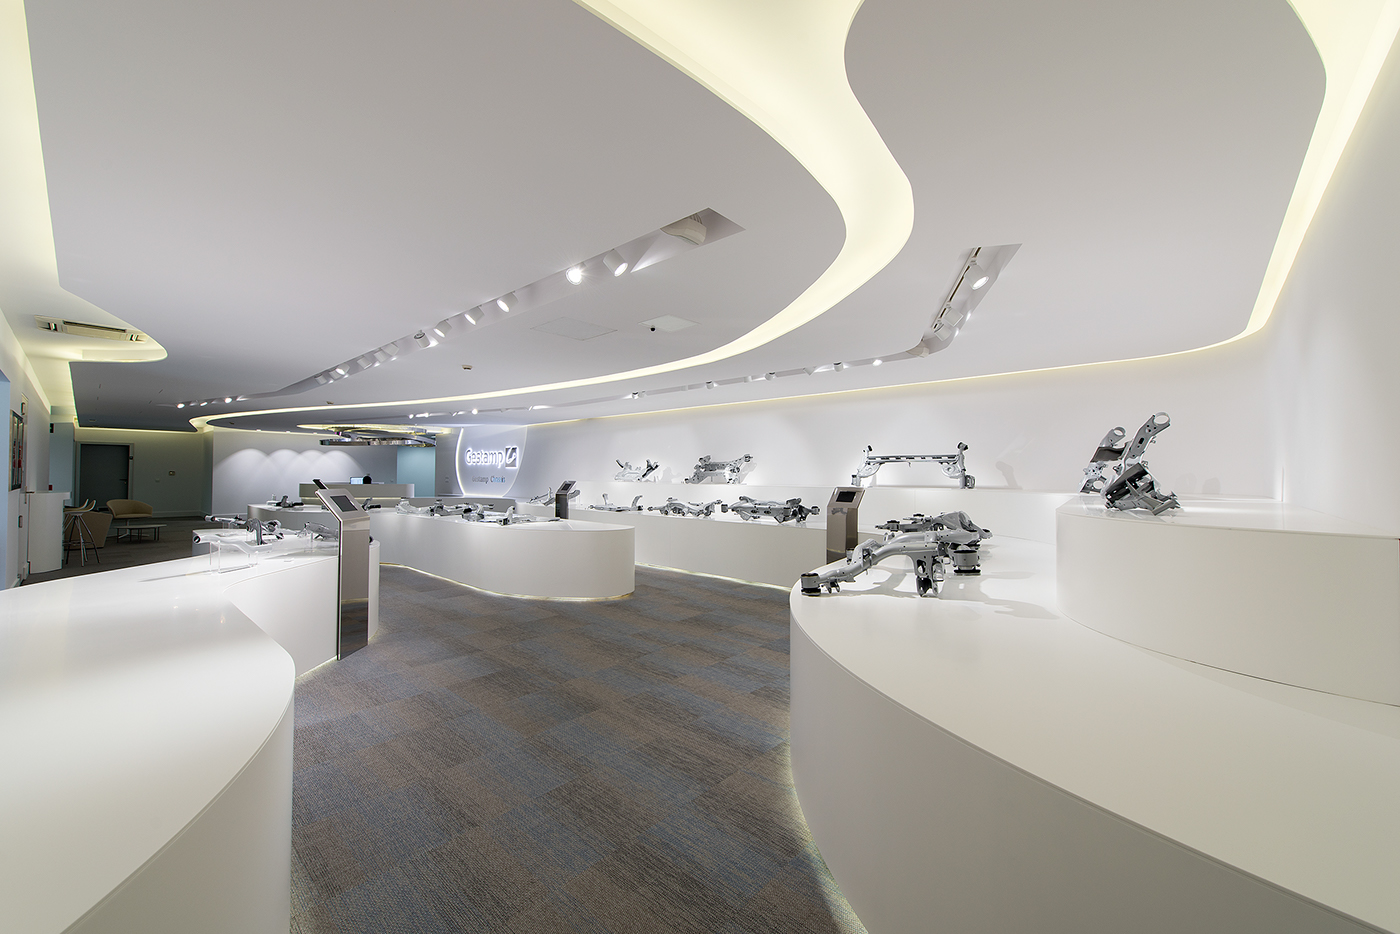 design diseño architecture arquitectura futurista interiordesign Interiorismo showroom